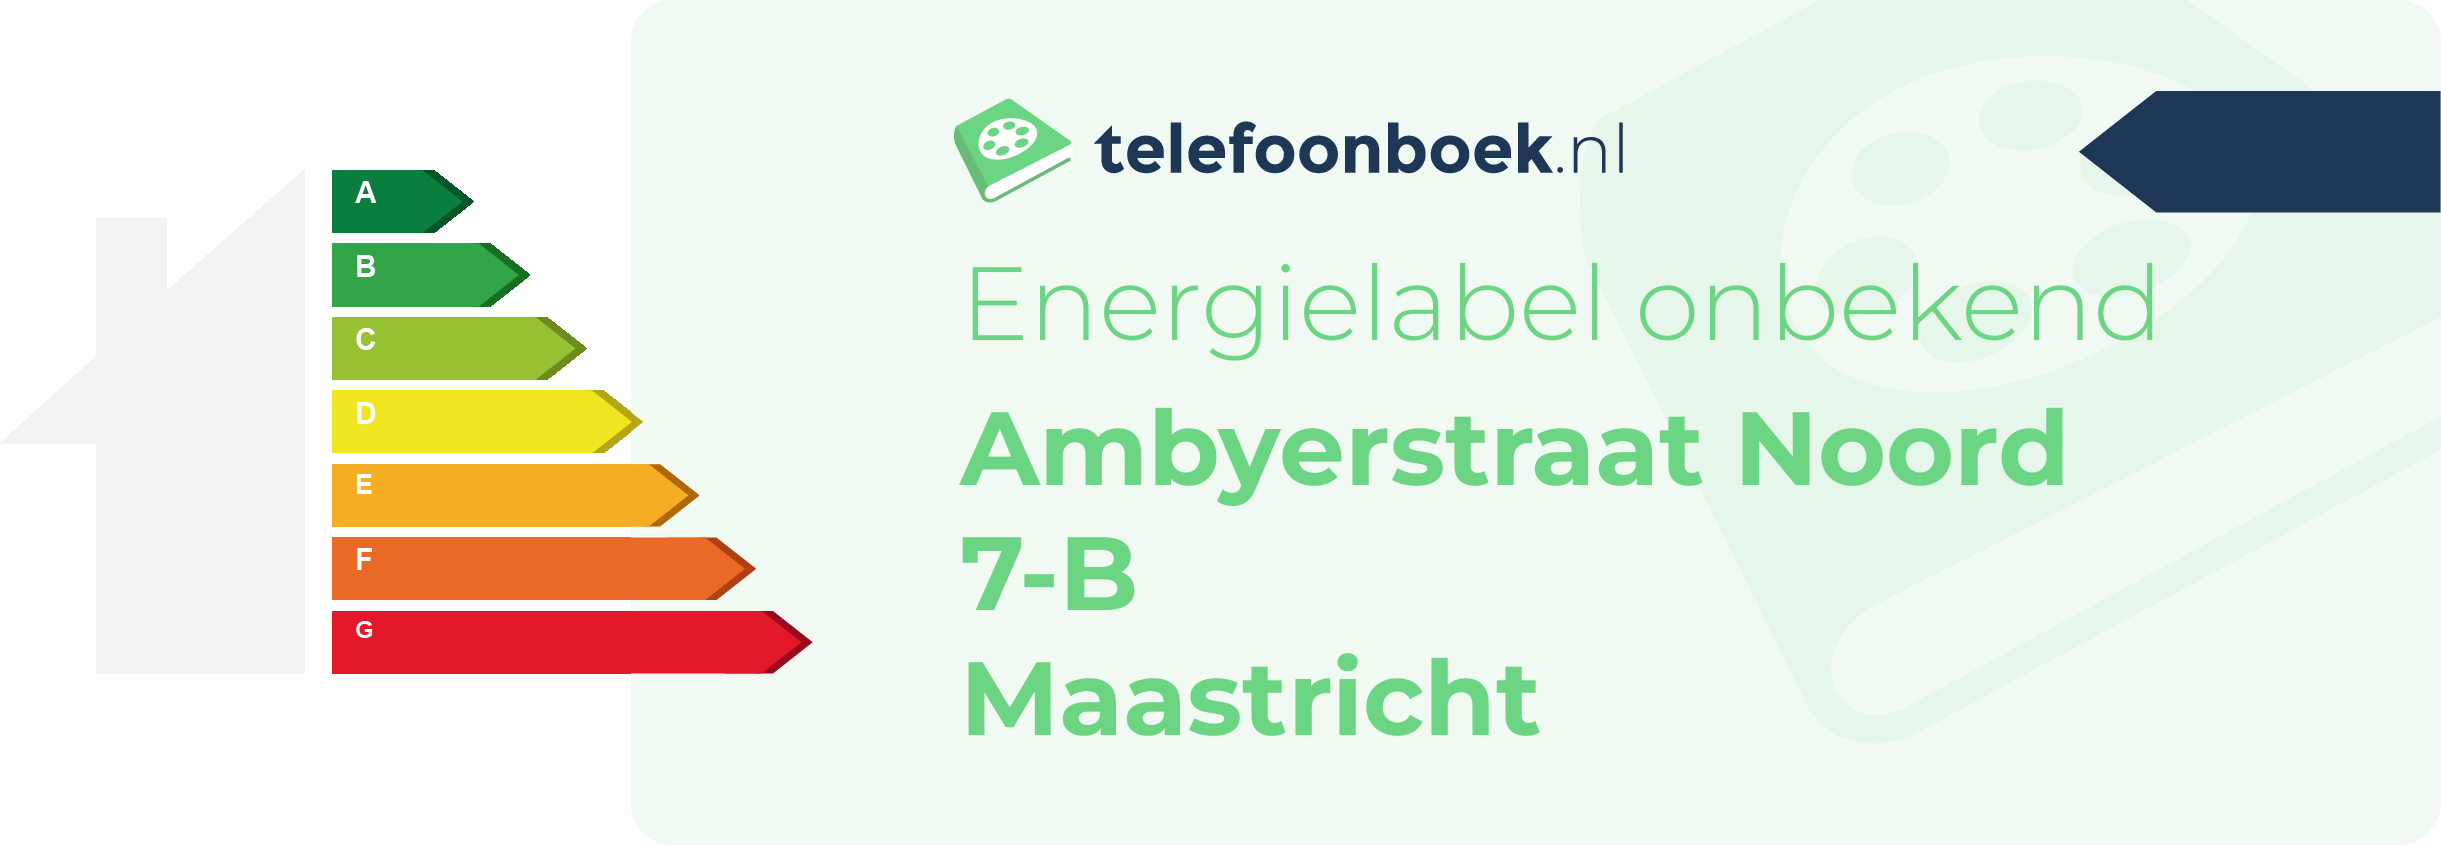 Energielabel Ambyerstraat Noord 7-B Maastricht